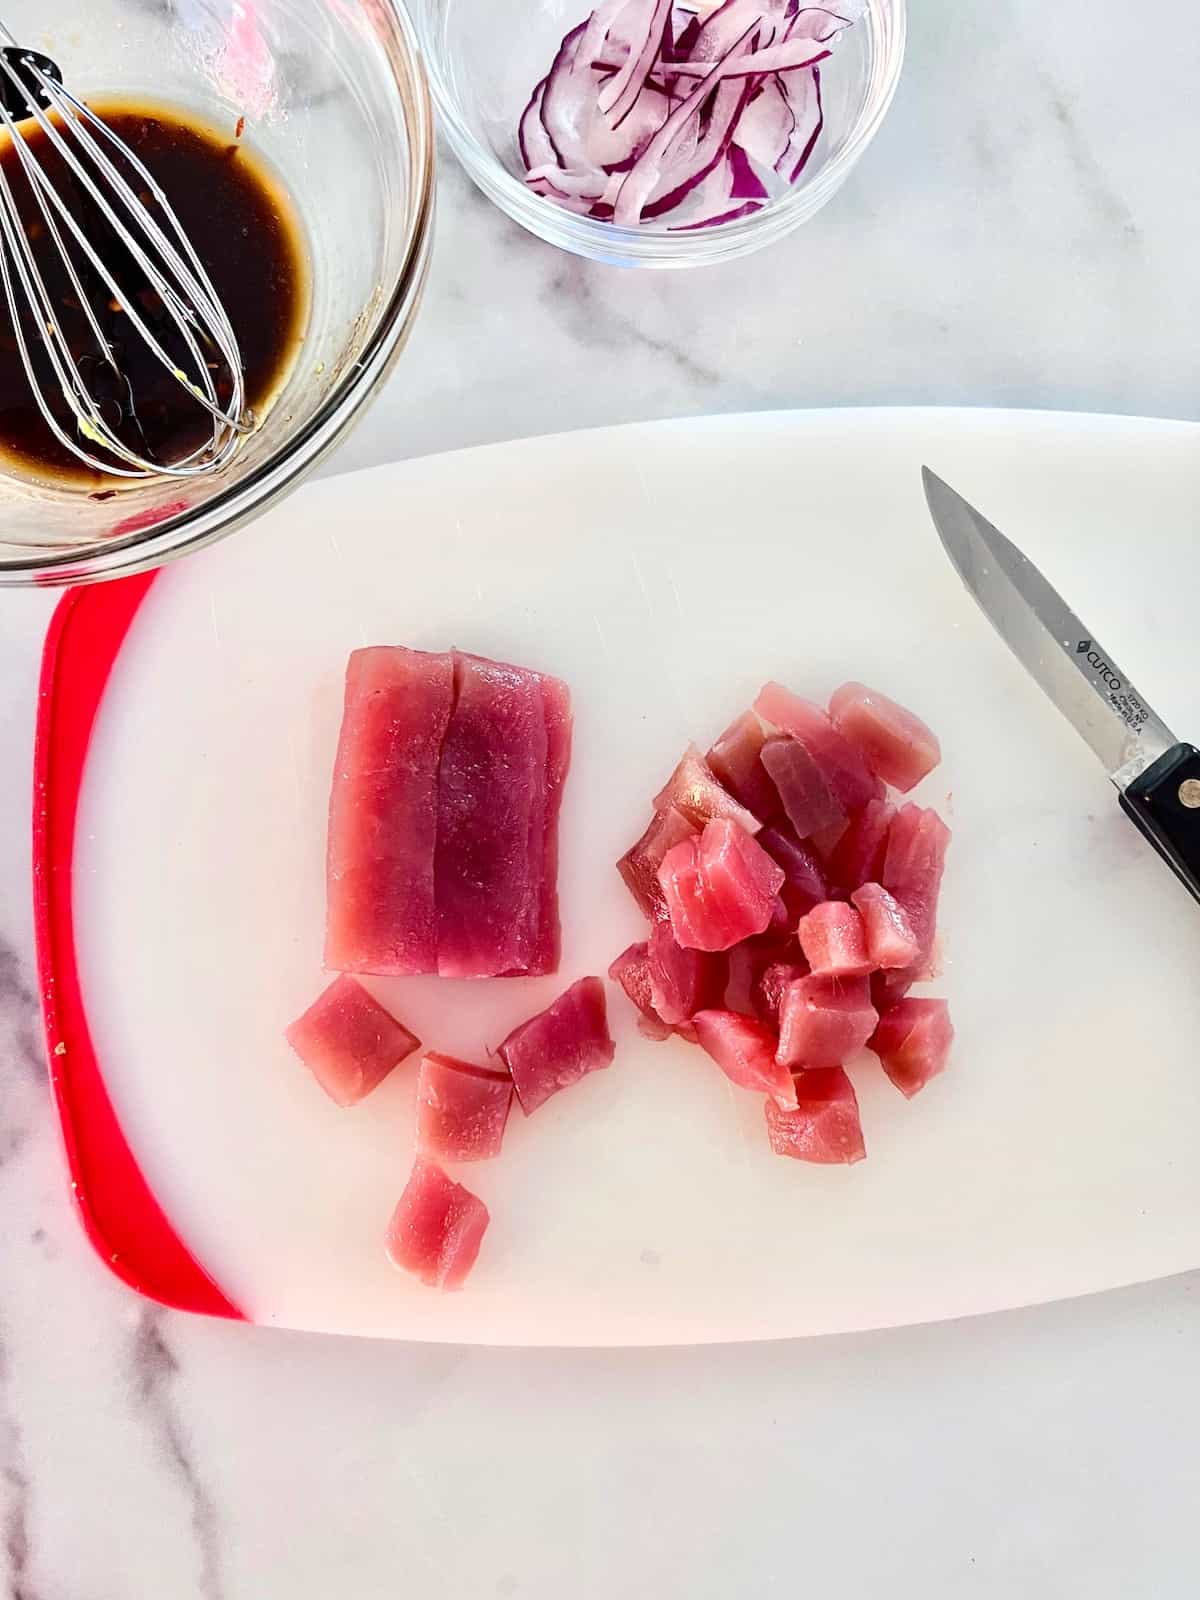 Fresh ahi tuna cut into small cubes on a cutting board.